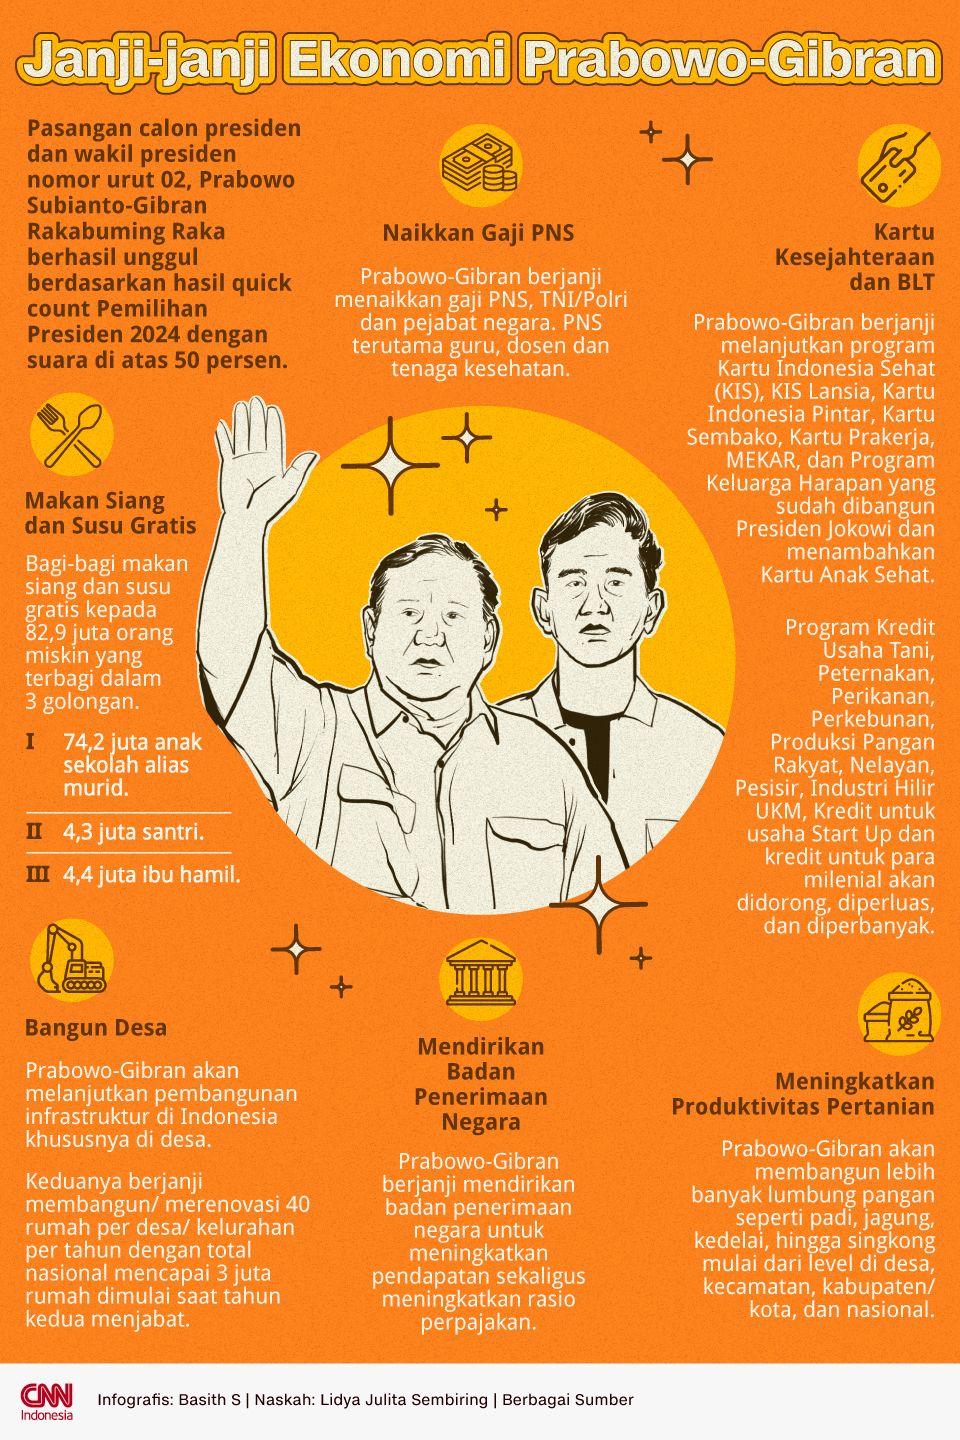 Infografis Janji-janji Ekonomi Prabowo-Gibran